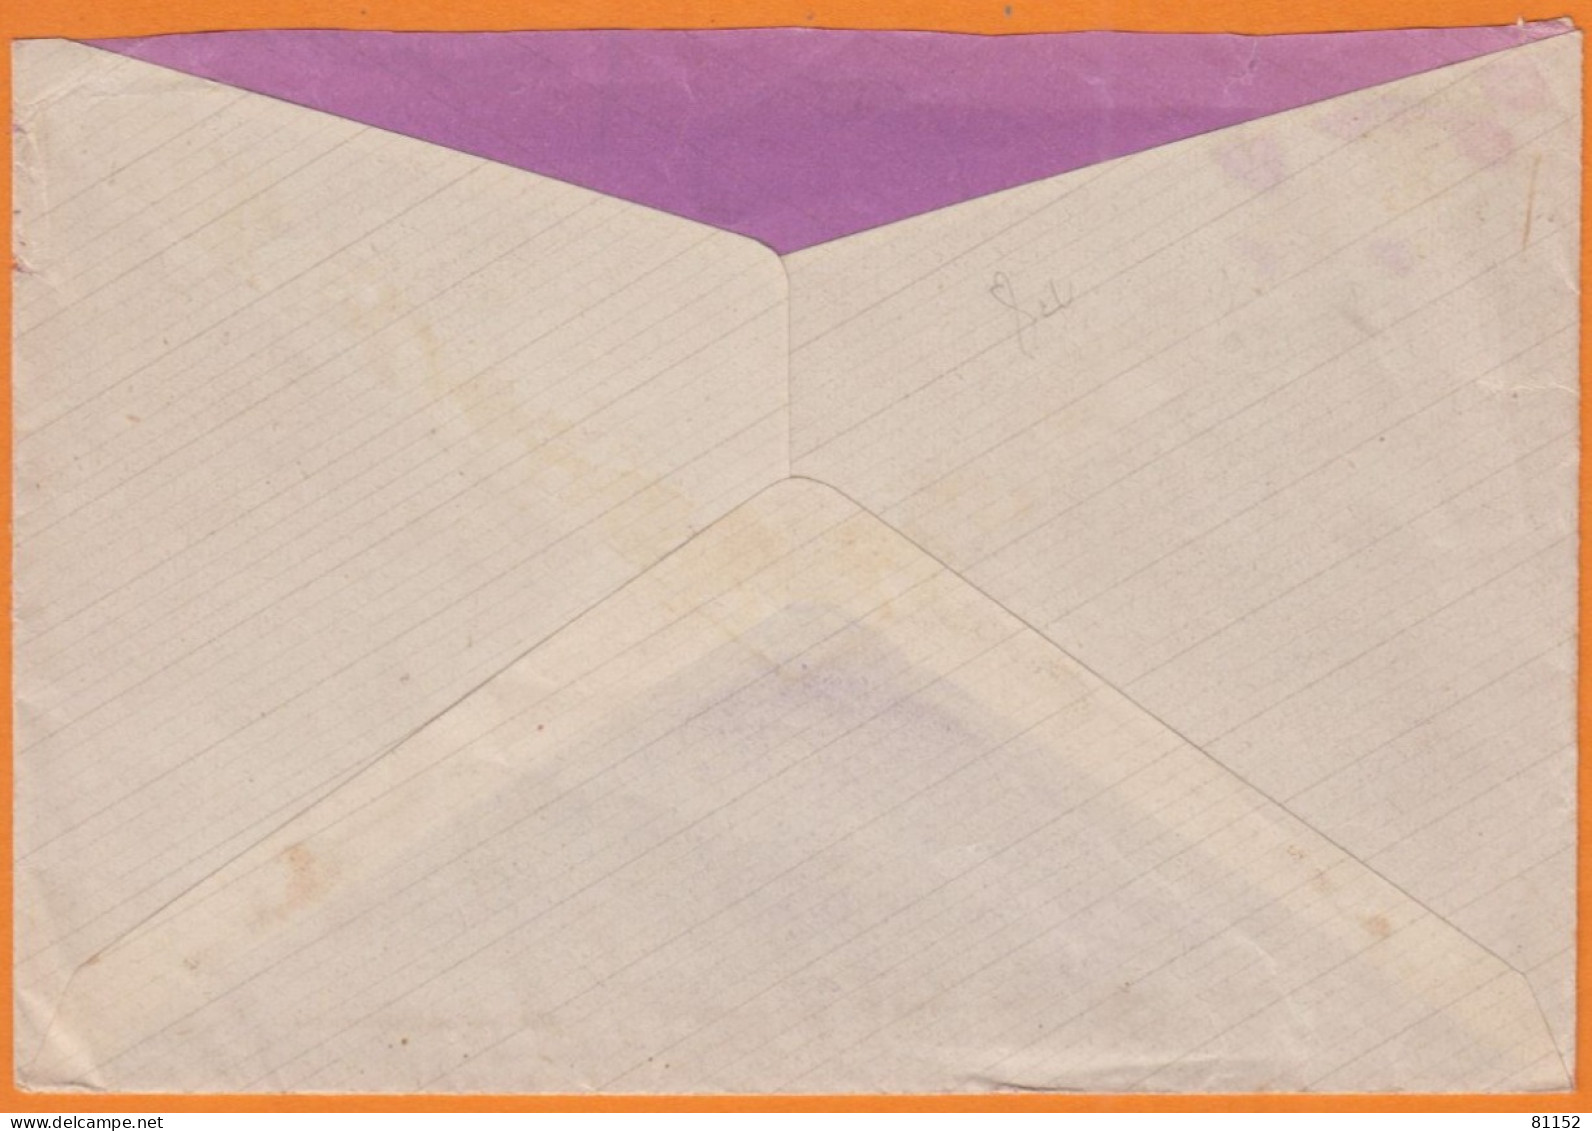 Flier " SOUSCRIVEZ... " Sur Lettre En F.M.avec Courrier D'un SERGENT 1940 De MARSEILLE Au FORT SAINT JEAN - WW II